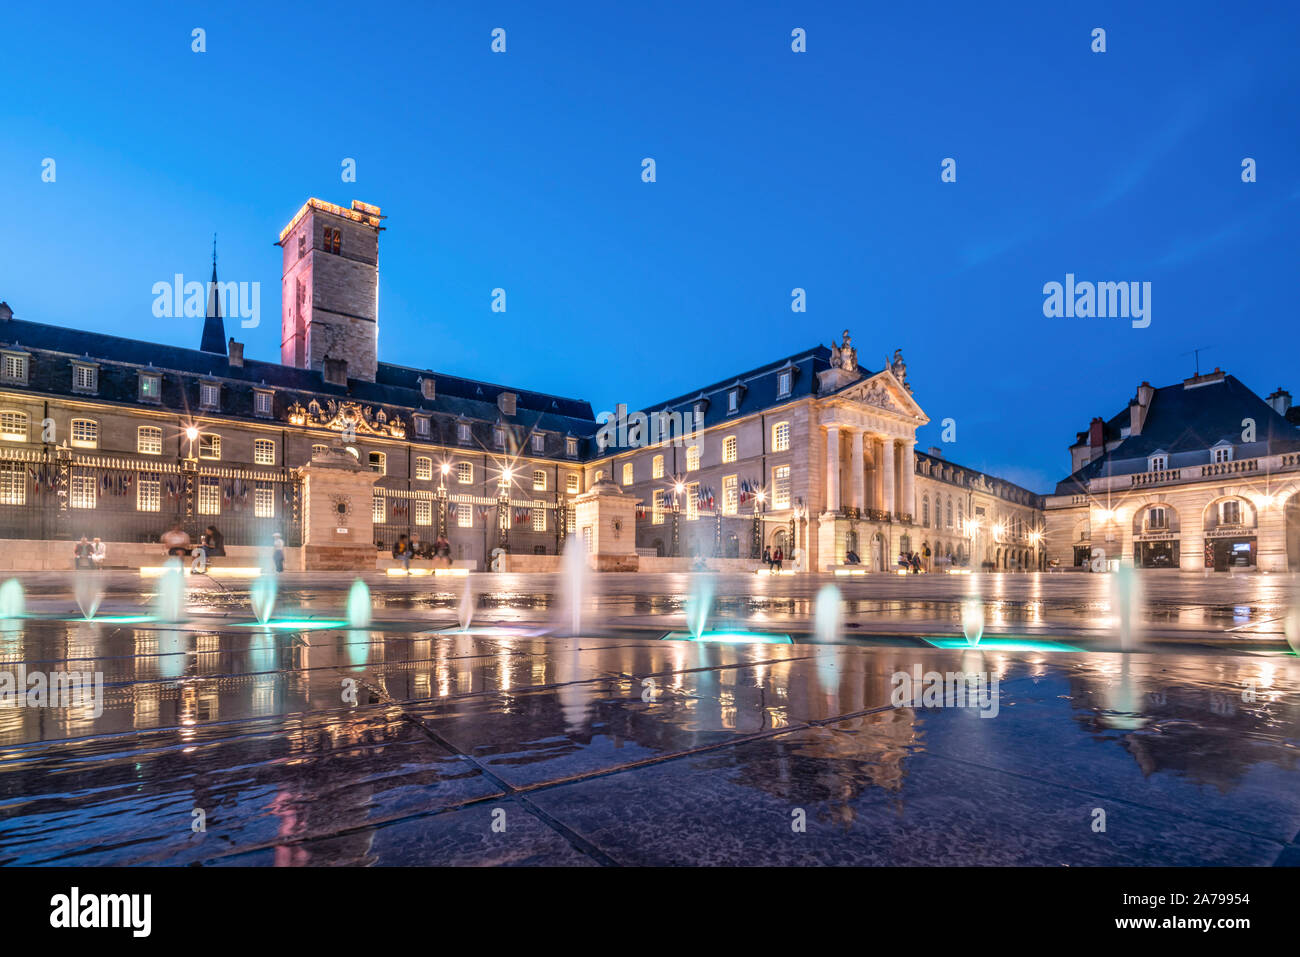 water fountains at Place de la Liberation in Dijon, Le palais des ducs de Bourgogne, ducs palace, Cote d Or, Burgundy, France Stock Photo